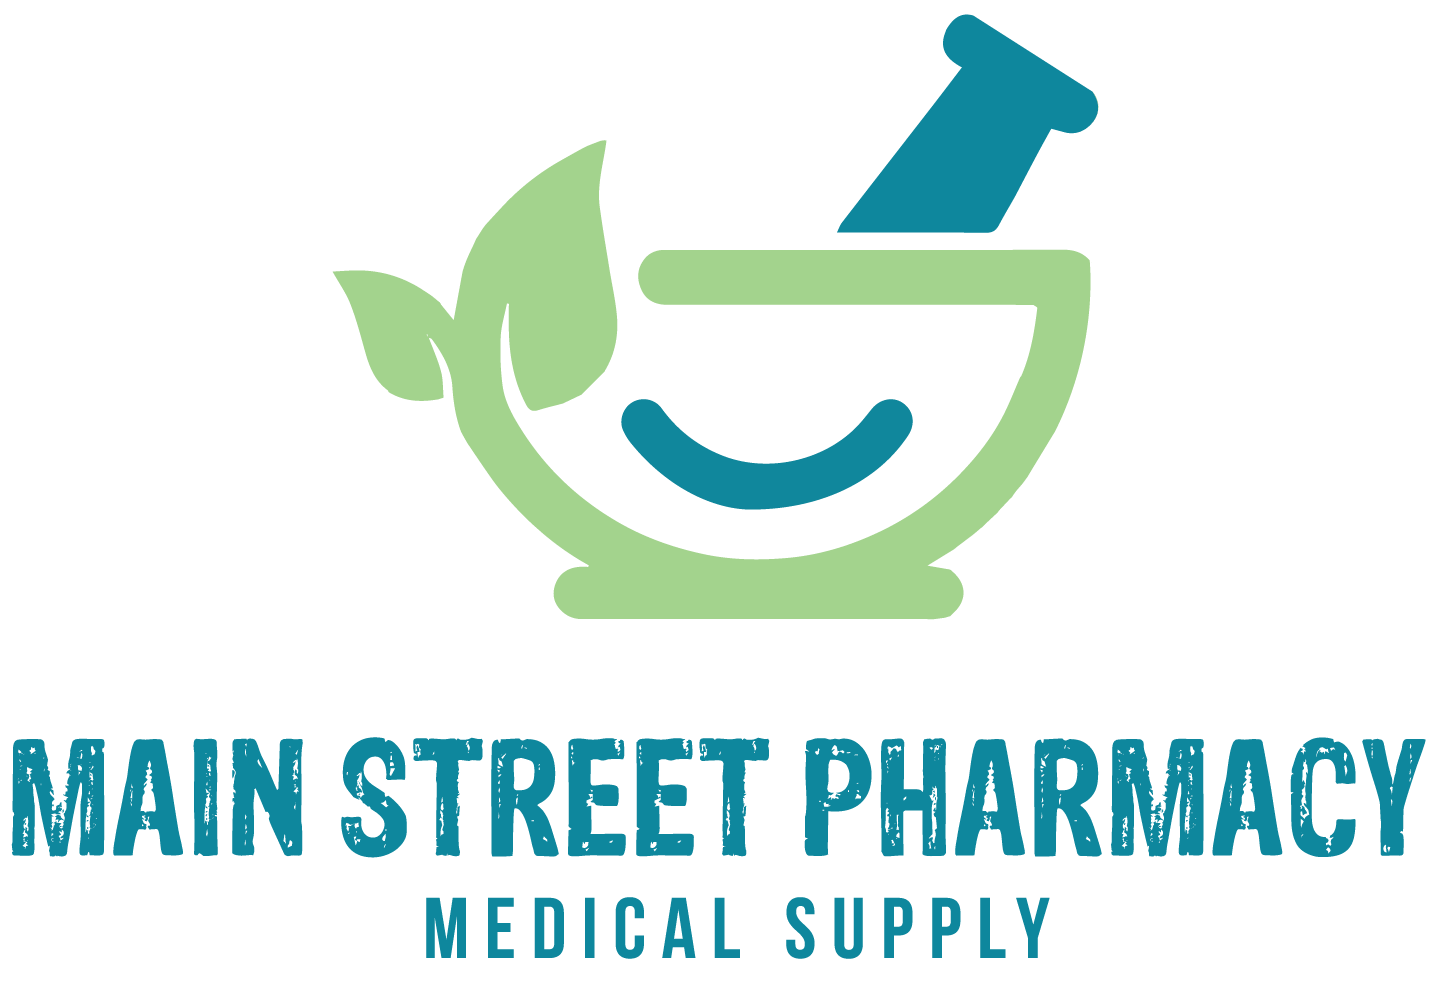 Main Street Pharmacy & Medical Supply